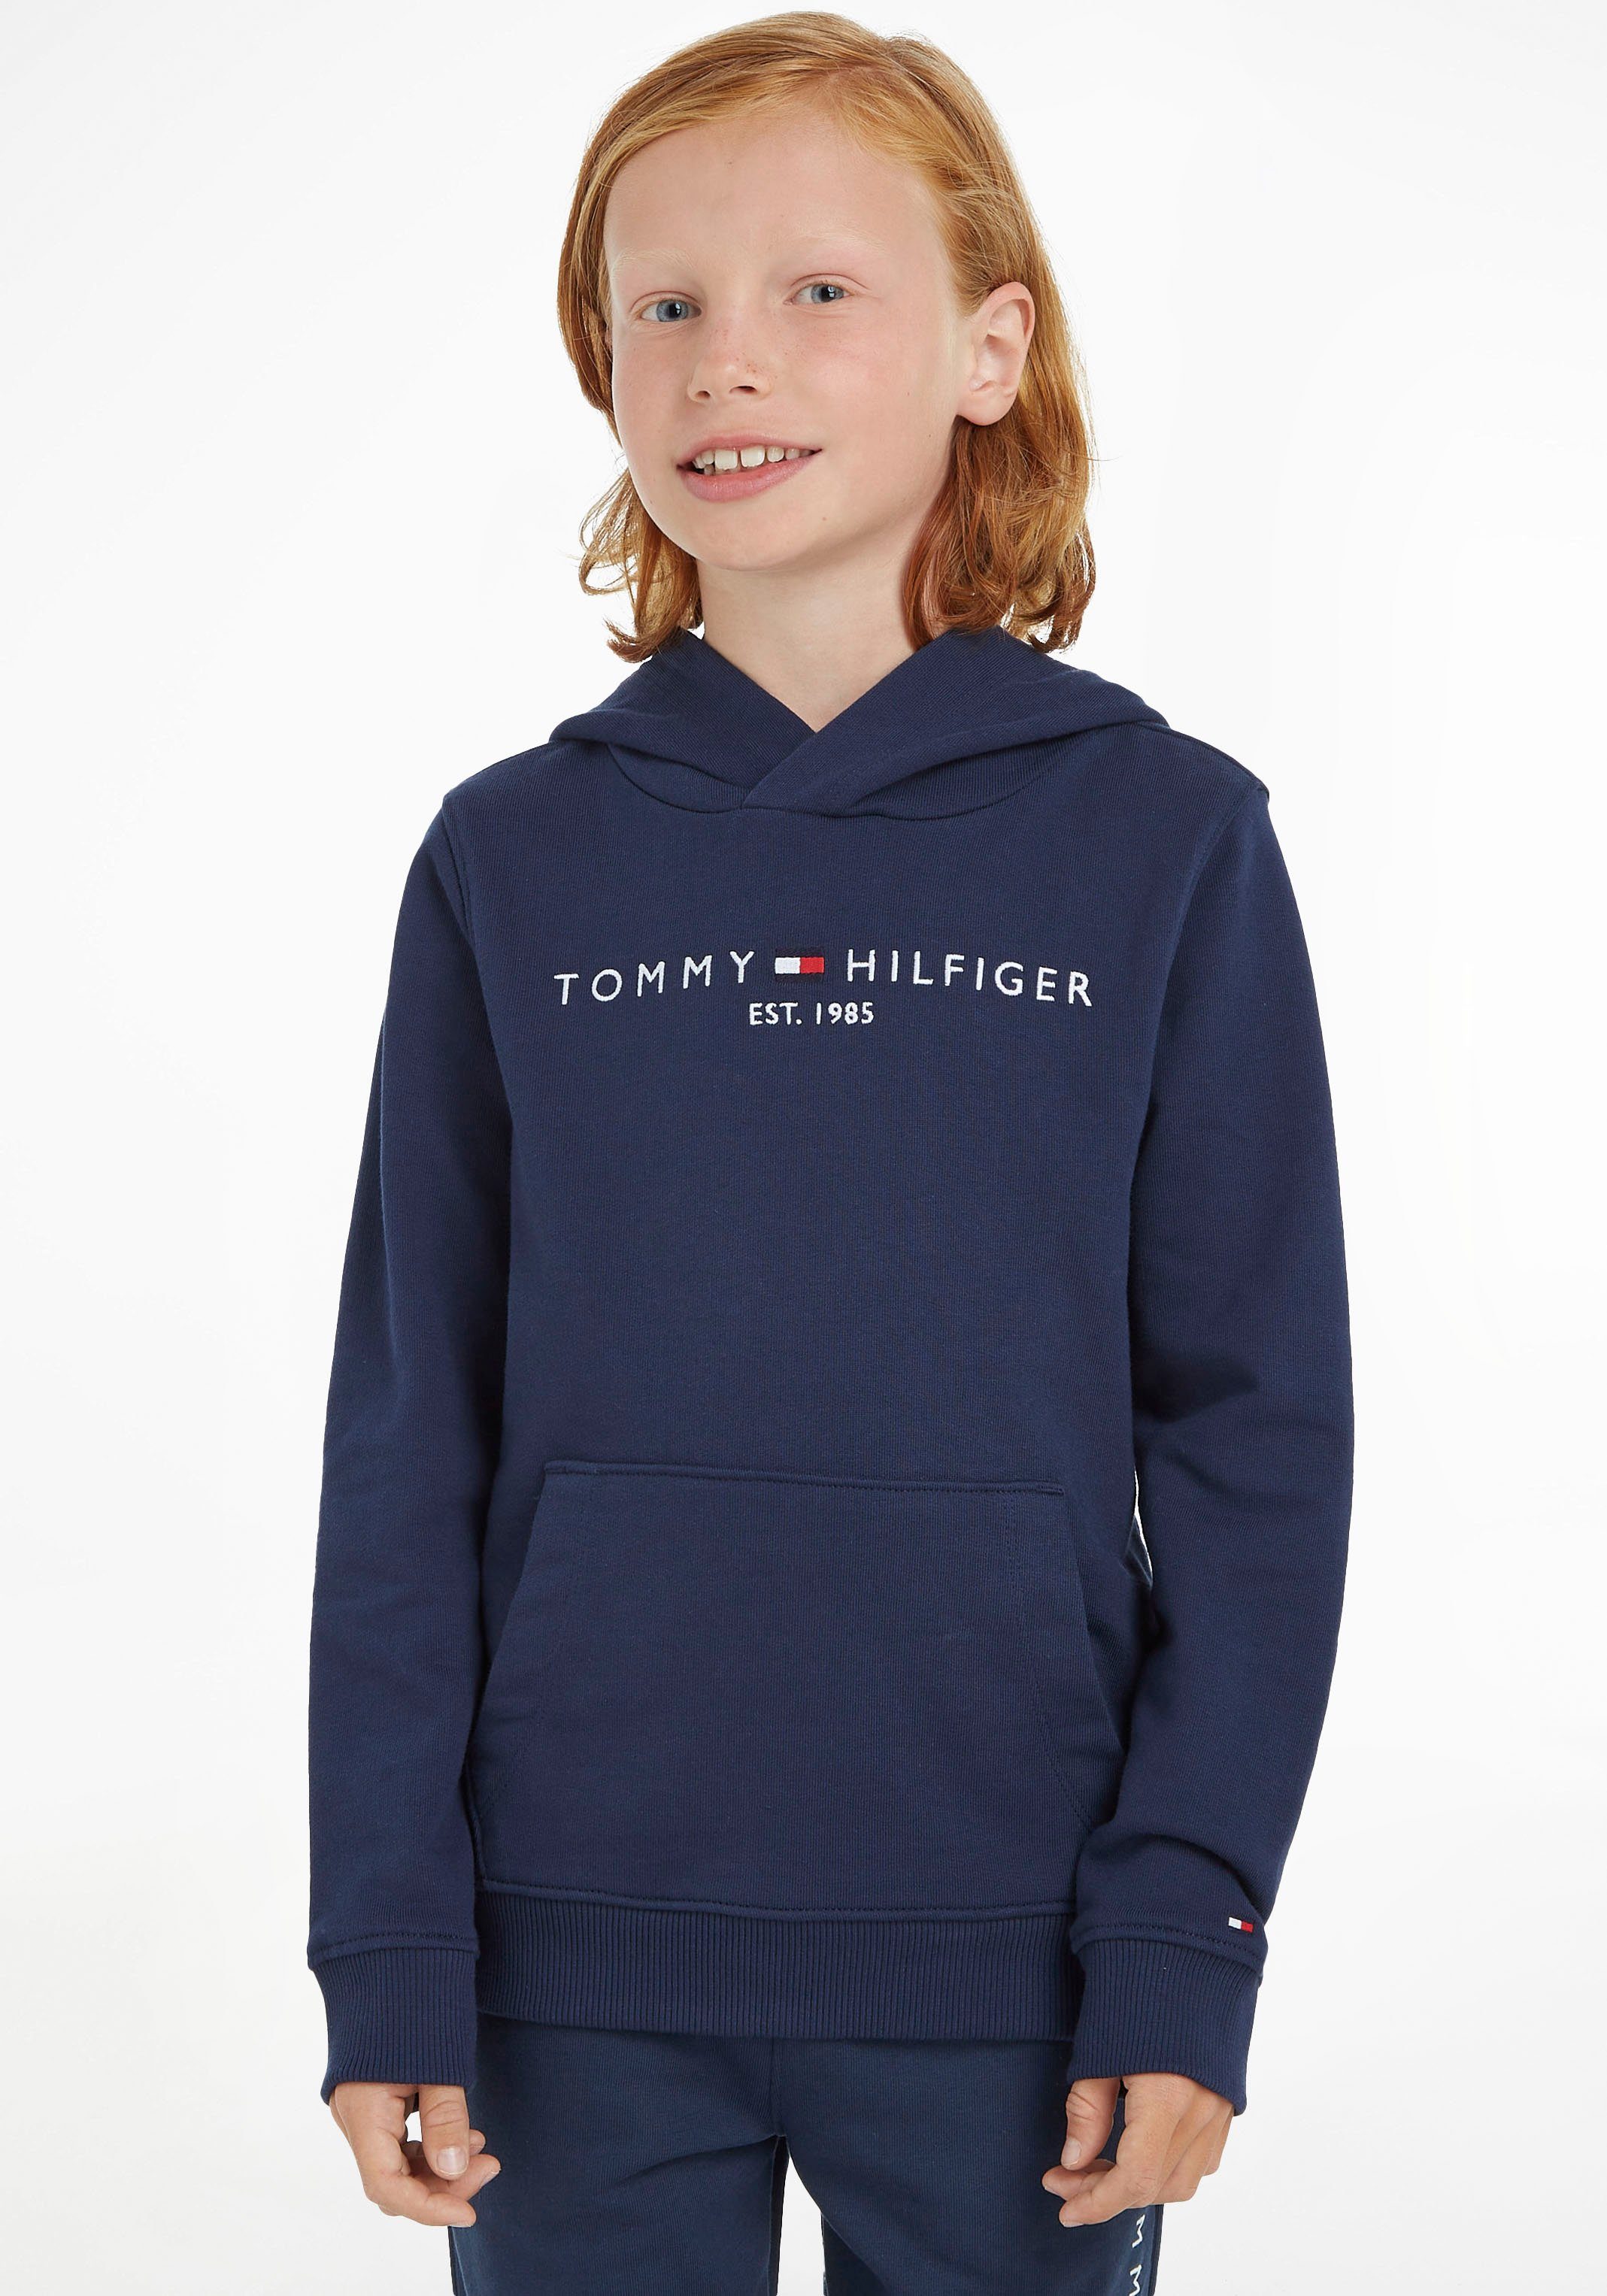 Mädchen Tommy Kids Kinder Junior Kapuzensweatshirt ESSENTIAL MiniMe,für und HOODIE Hilfiger Jungen